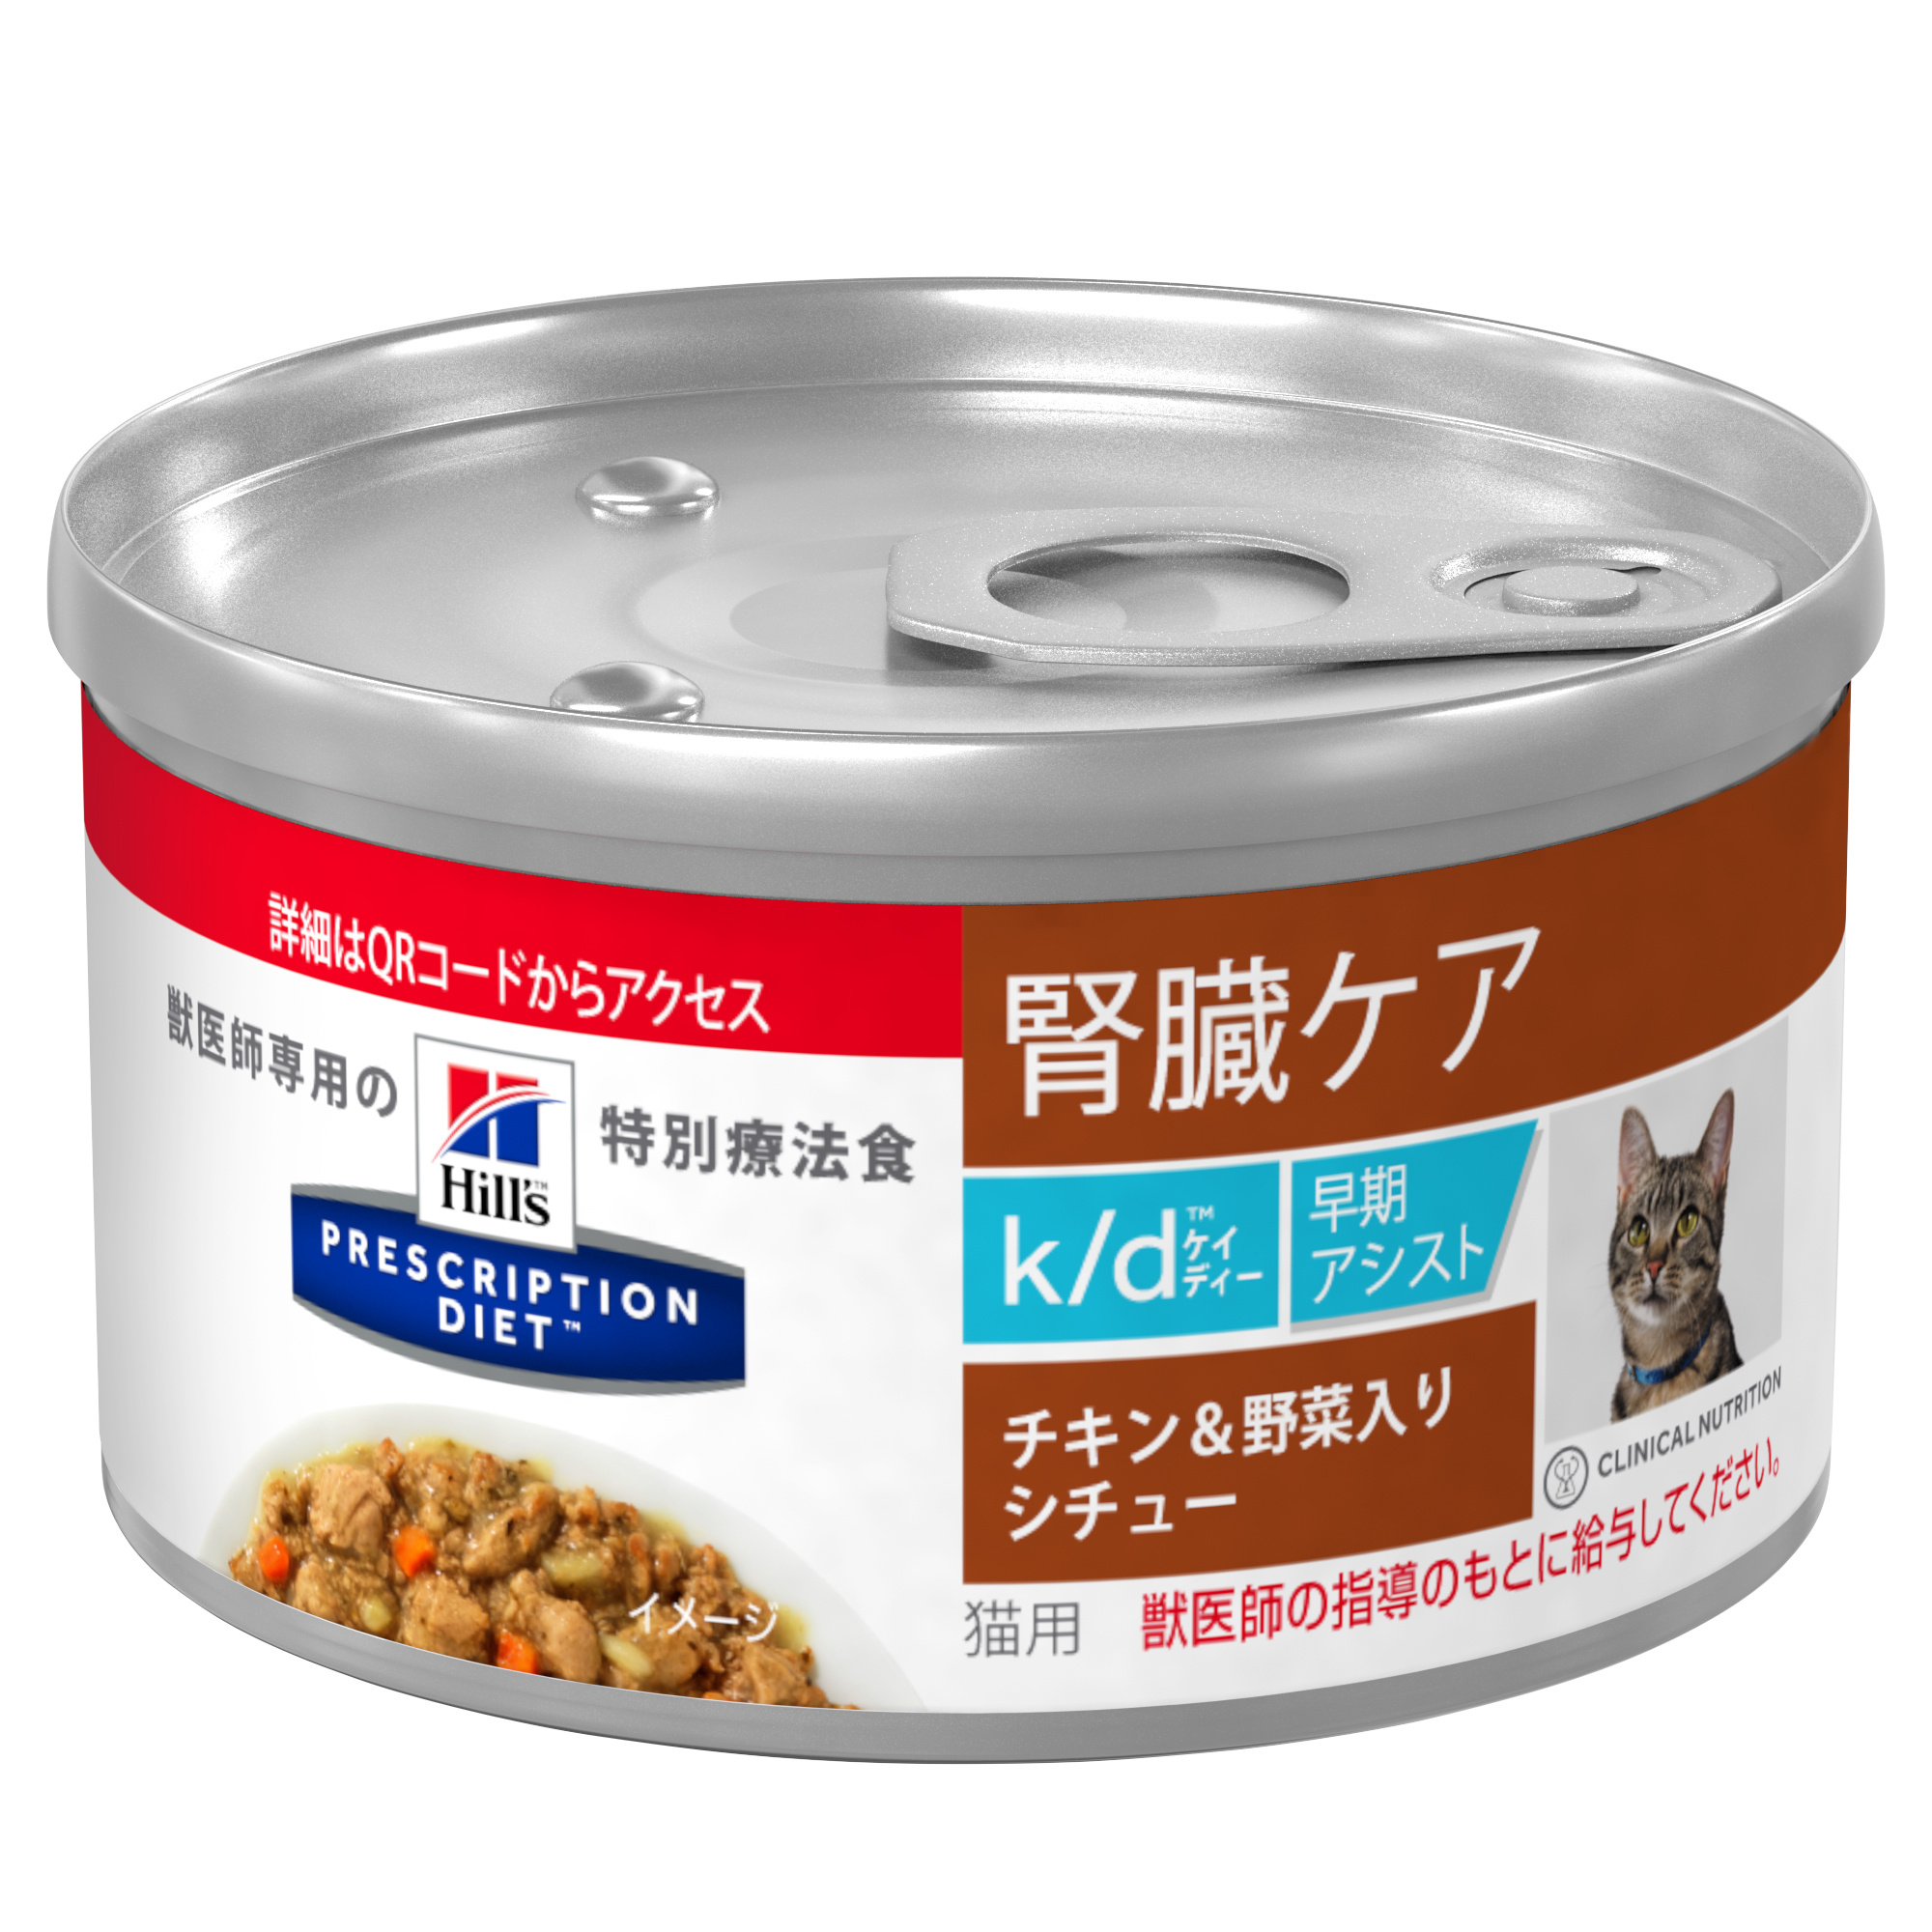 ヒルズのプリスクリプション・ダイエット〈猫用〉k/d(TM) 早期アシスト　シチュー缶